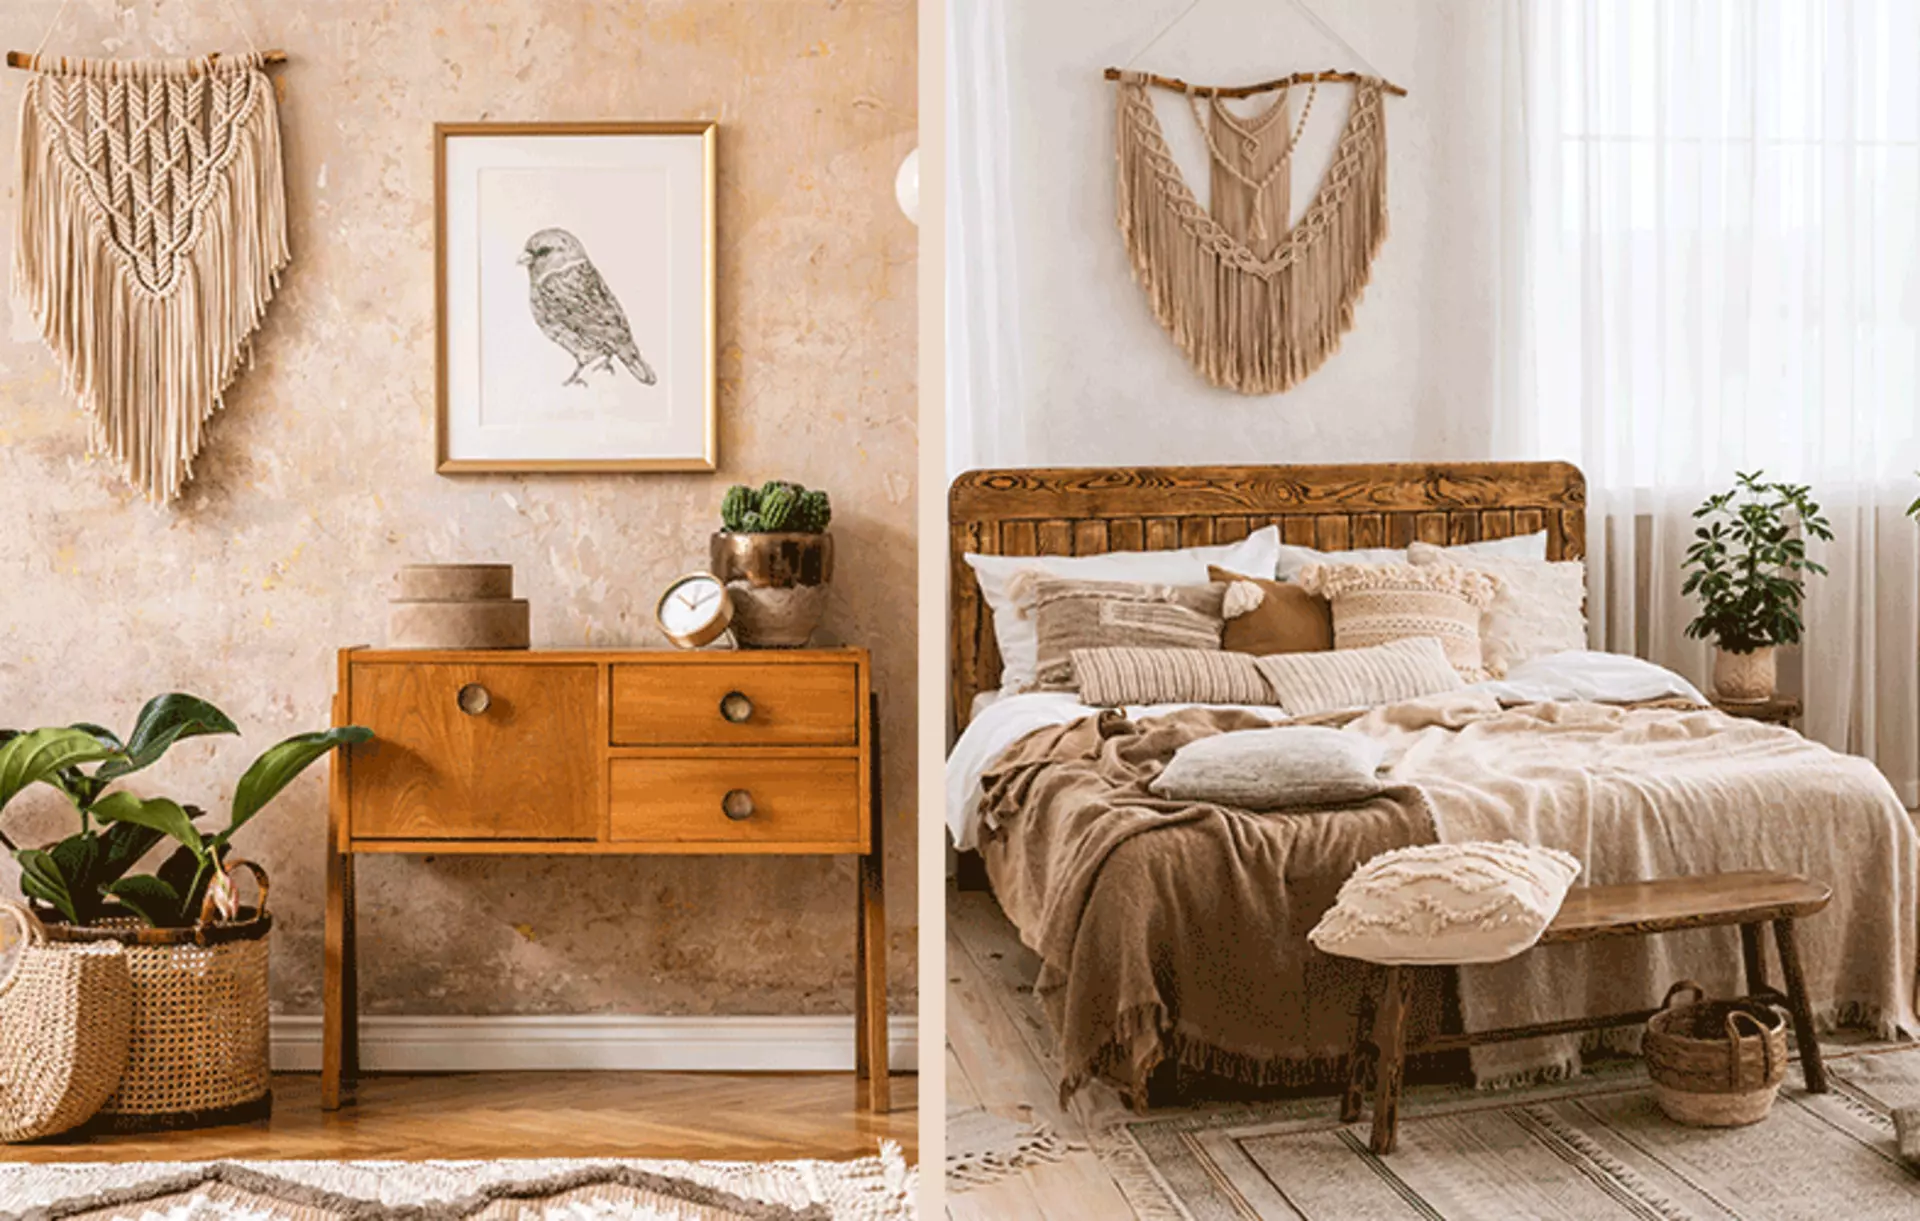 Inspirationsthema Vintage - Vintage Schlafzimmer- Jetzt bei Möbel Inhofer entdecken und inspirieren lassen!